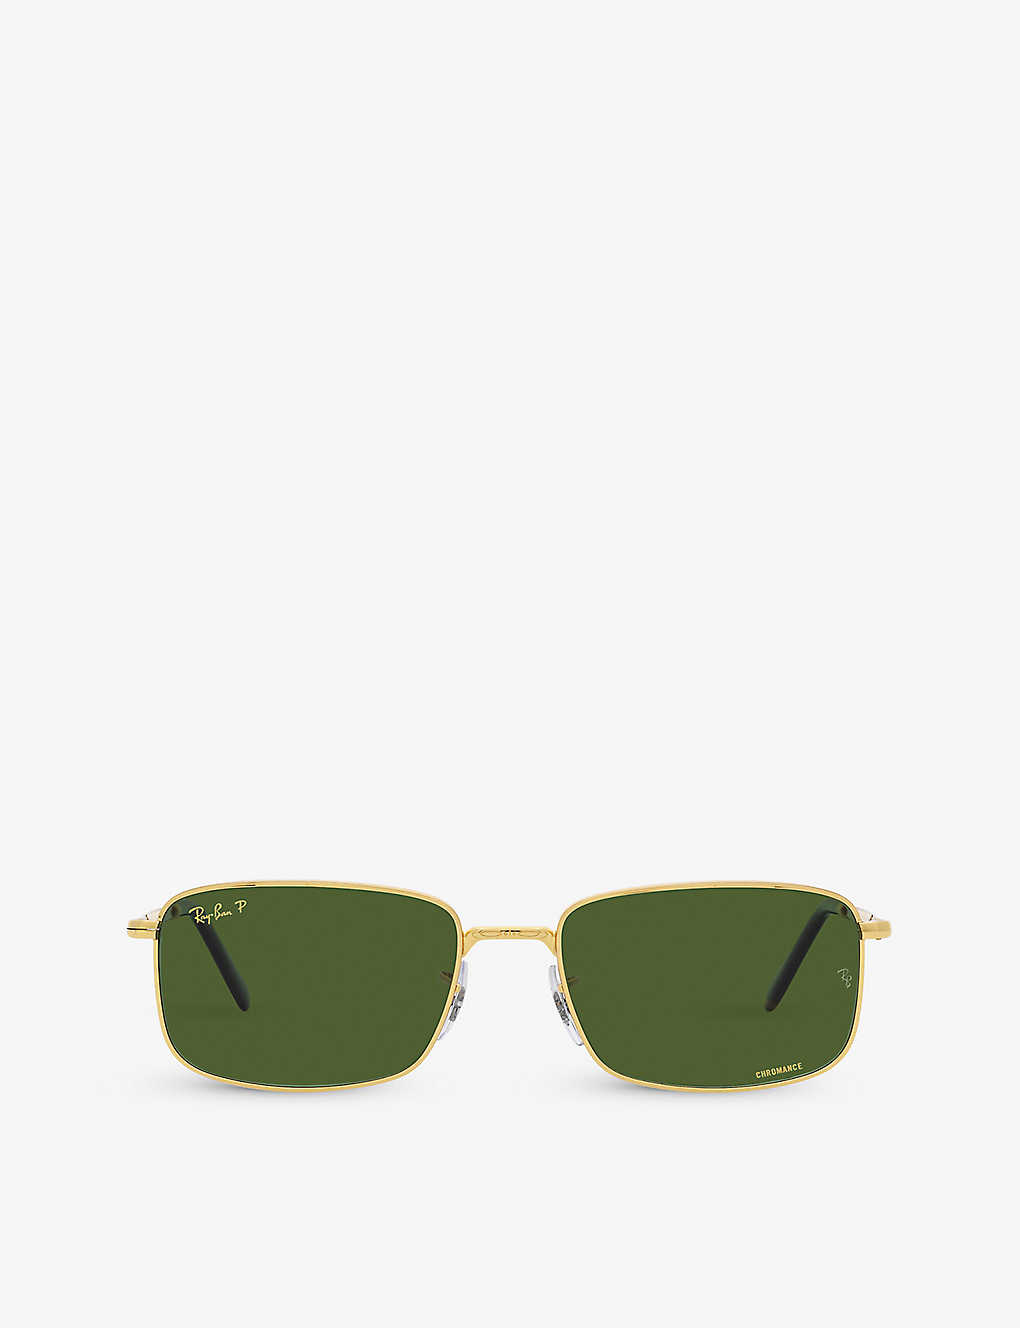 Ray Ban Sunglasses Unisex Rb3717 - Gold Frame Green Lenses Polarized 60-18